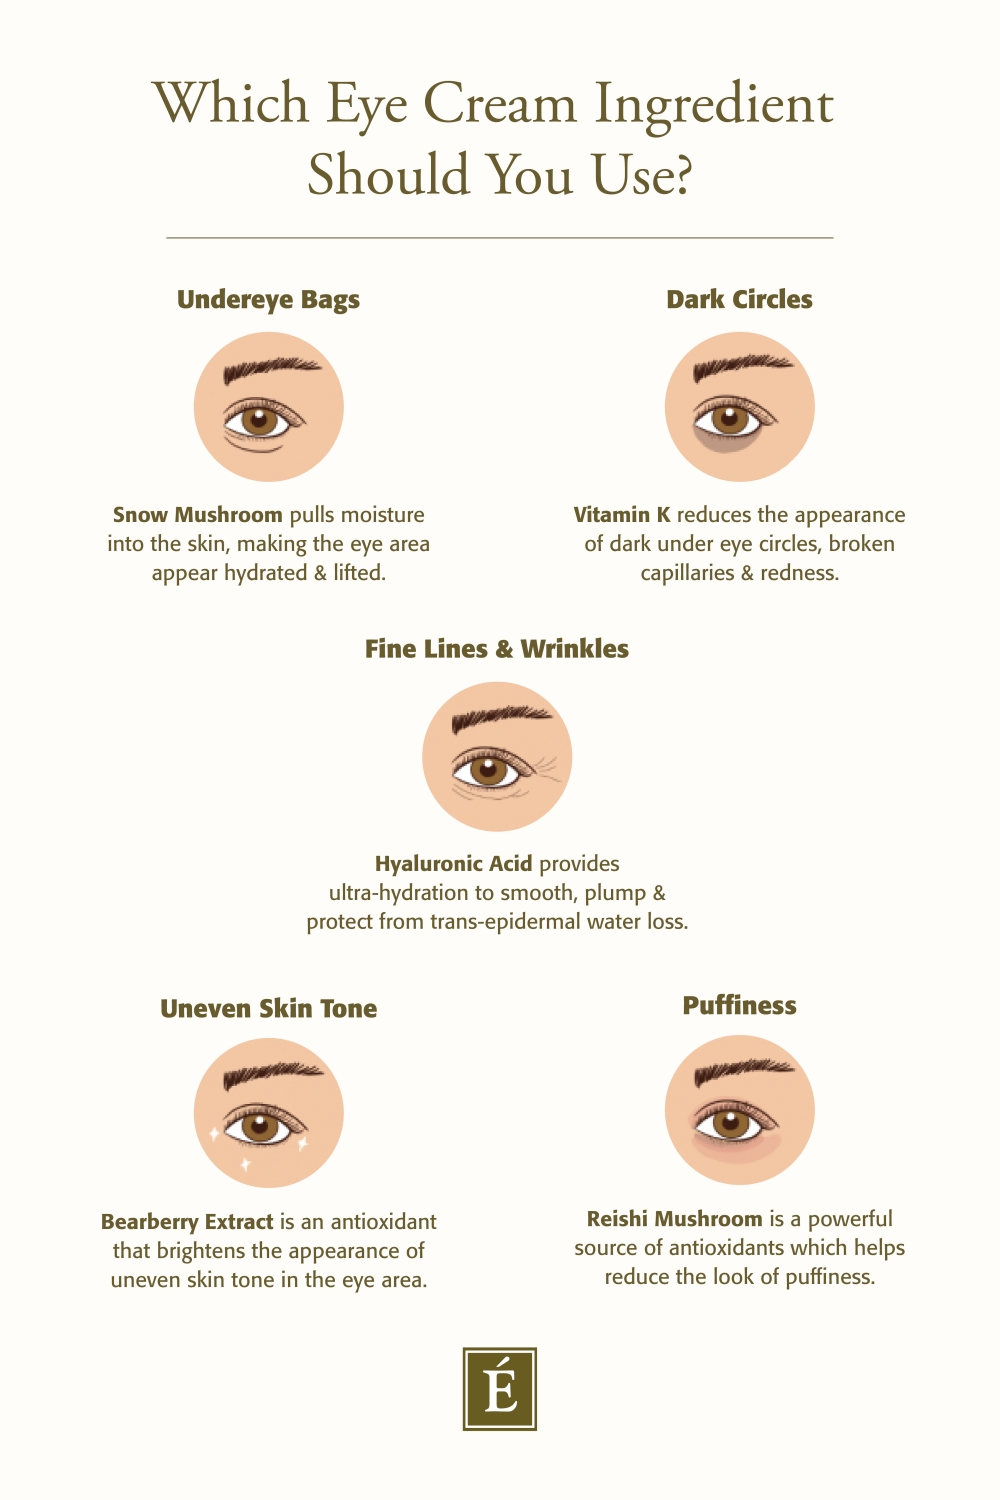 La mejor crema orgánica para ojos: para arrugas, bolsas y más